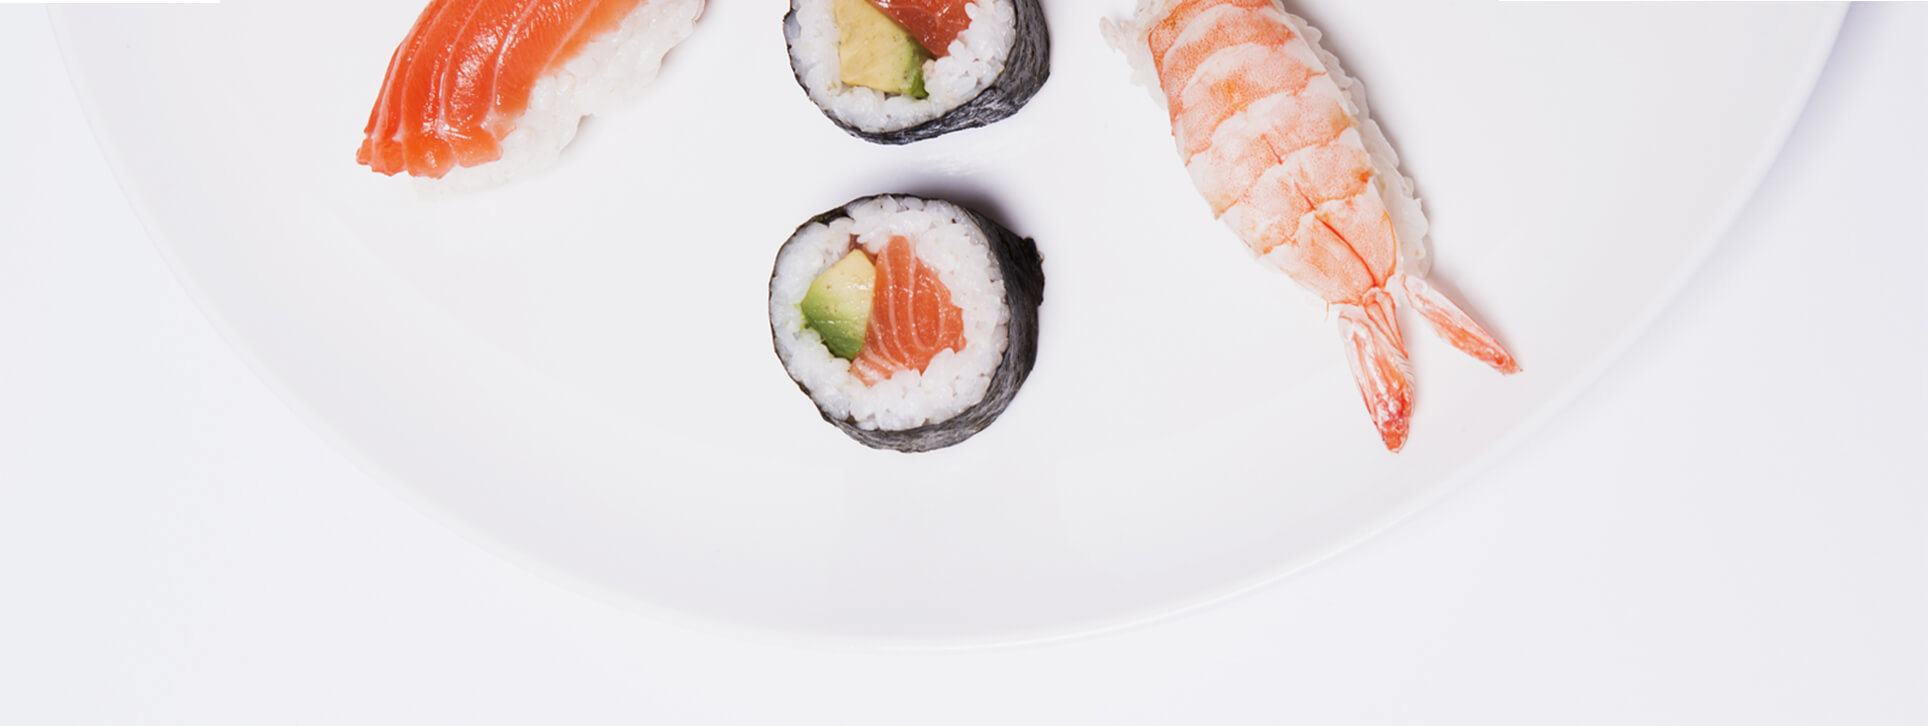 NIU Sushi.Imagen publicitaria de sushis